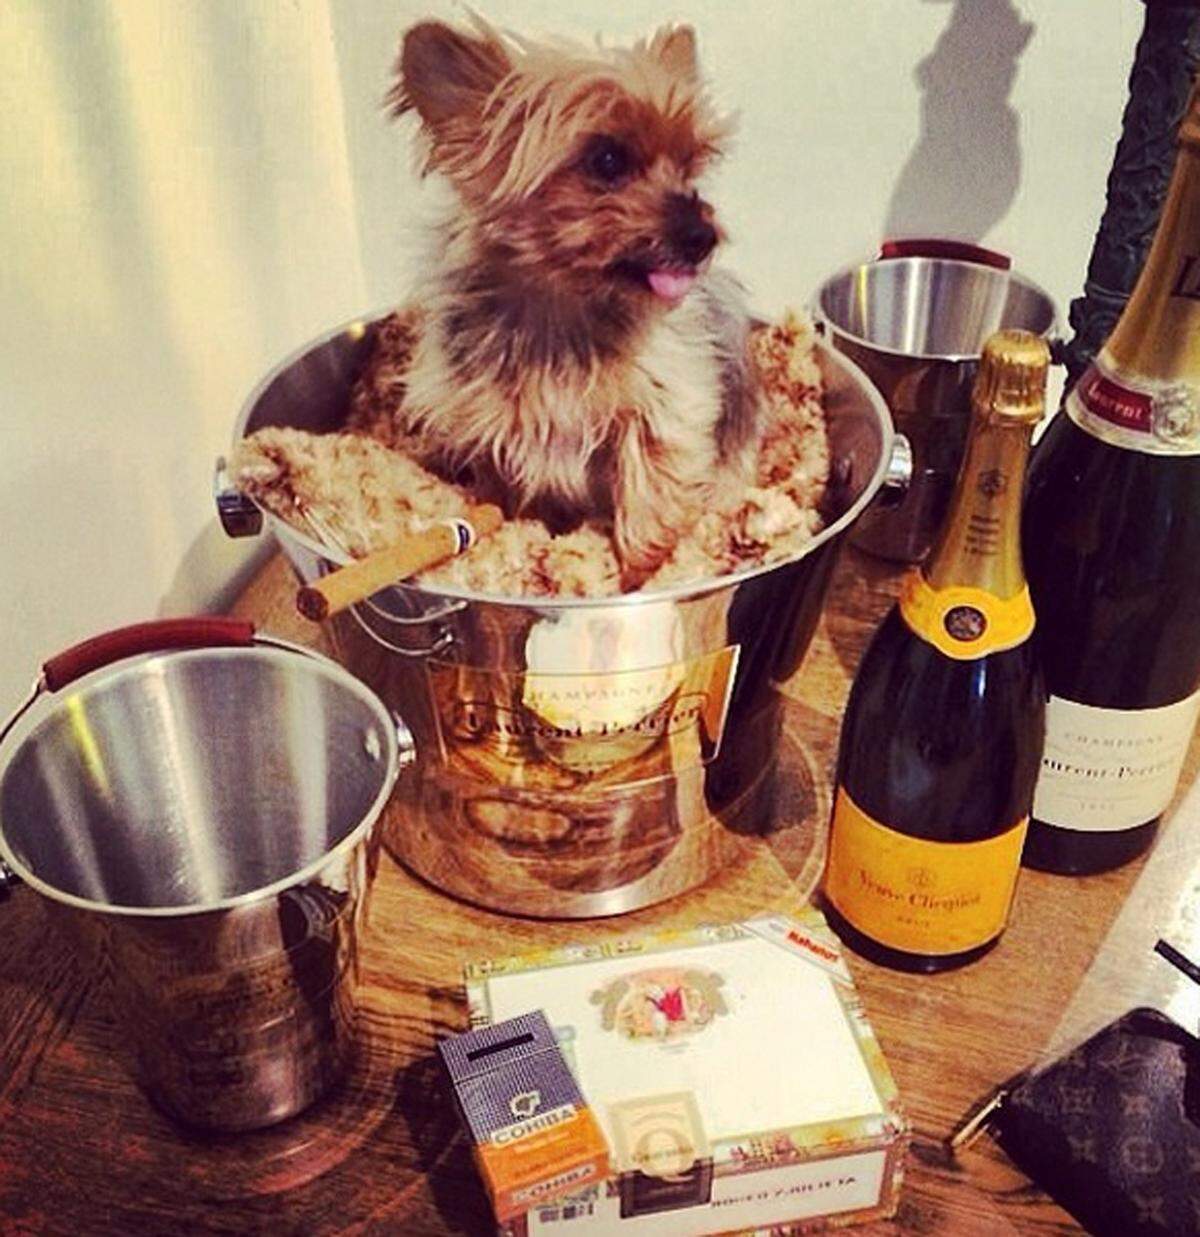 Gemütlich hat es sich dieser Yorkshire-Terrier zwischen Champagner gemacht.